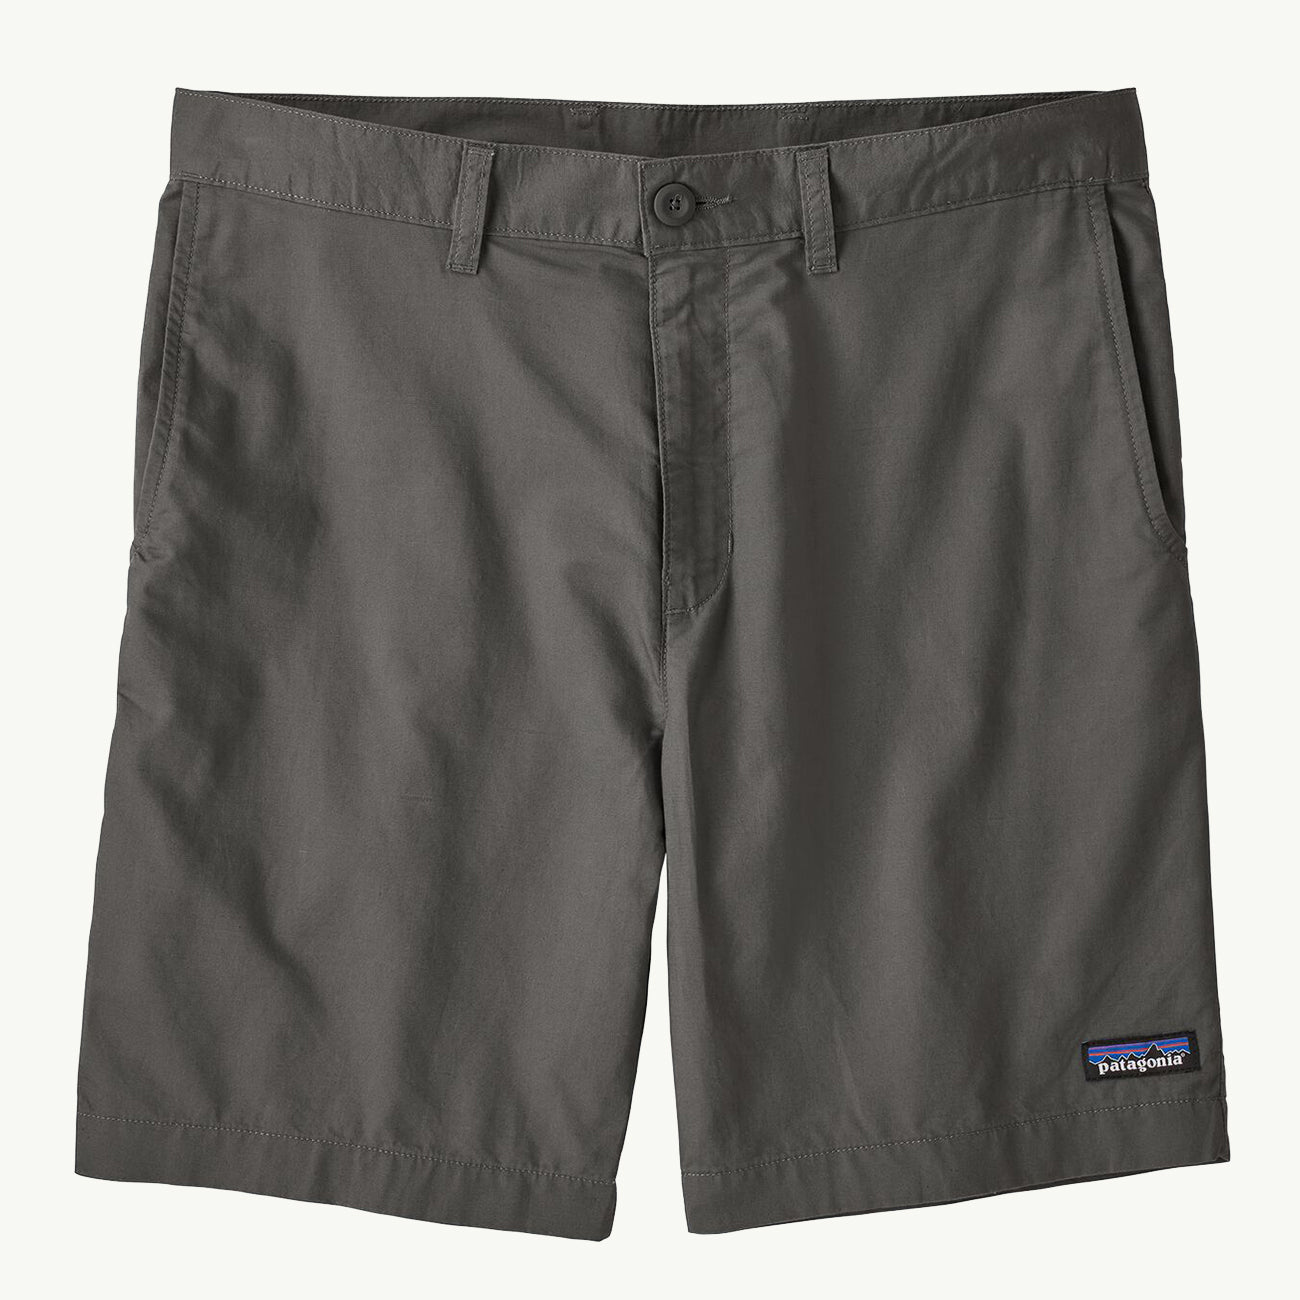 LW All Wear Hemp Shorts 8" - Forge Grey